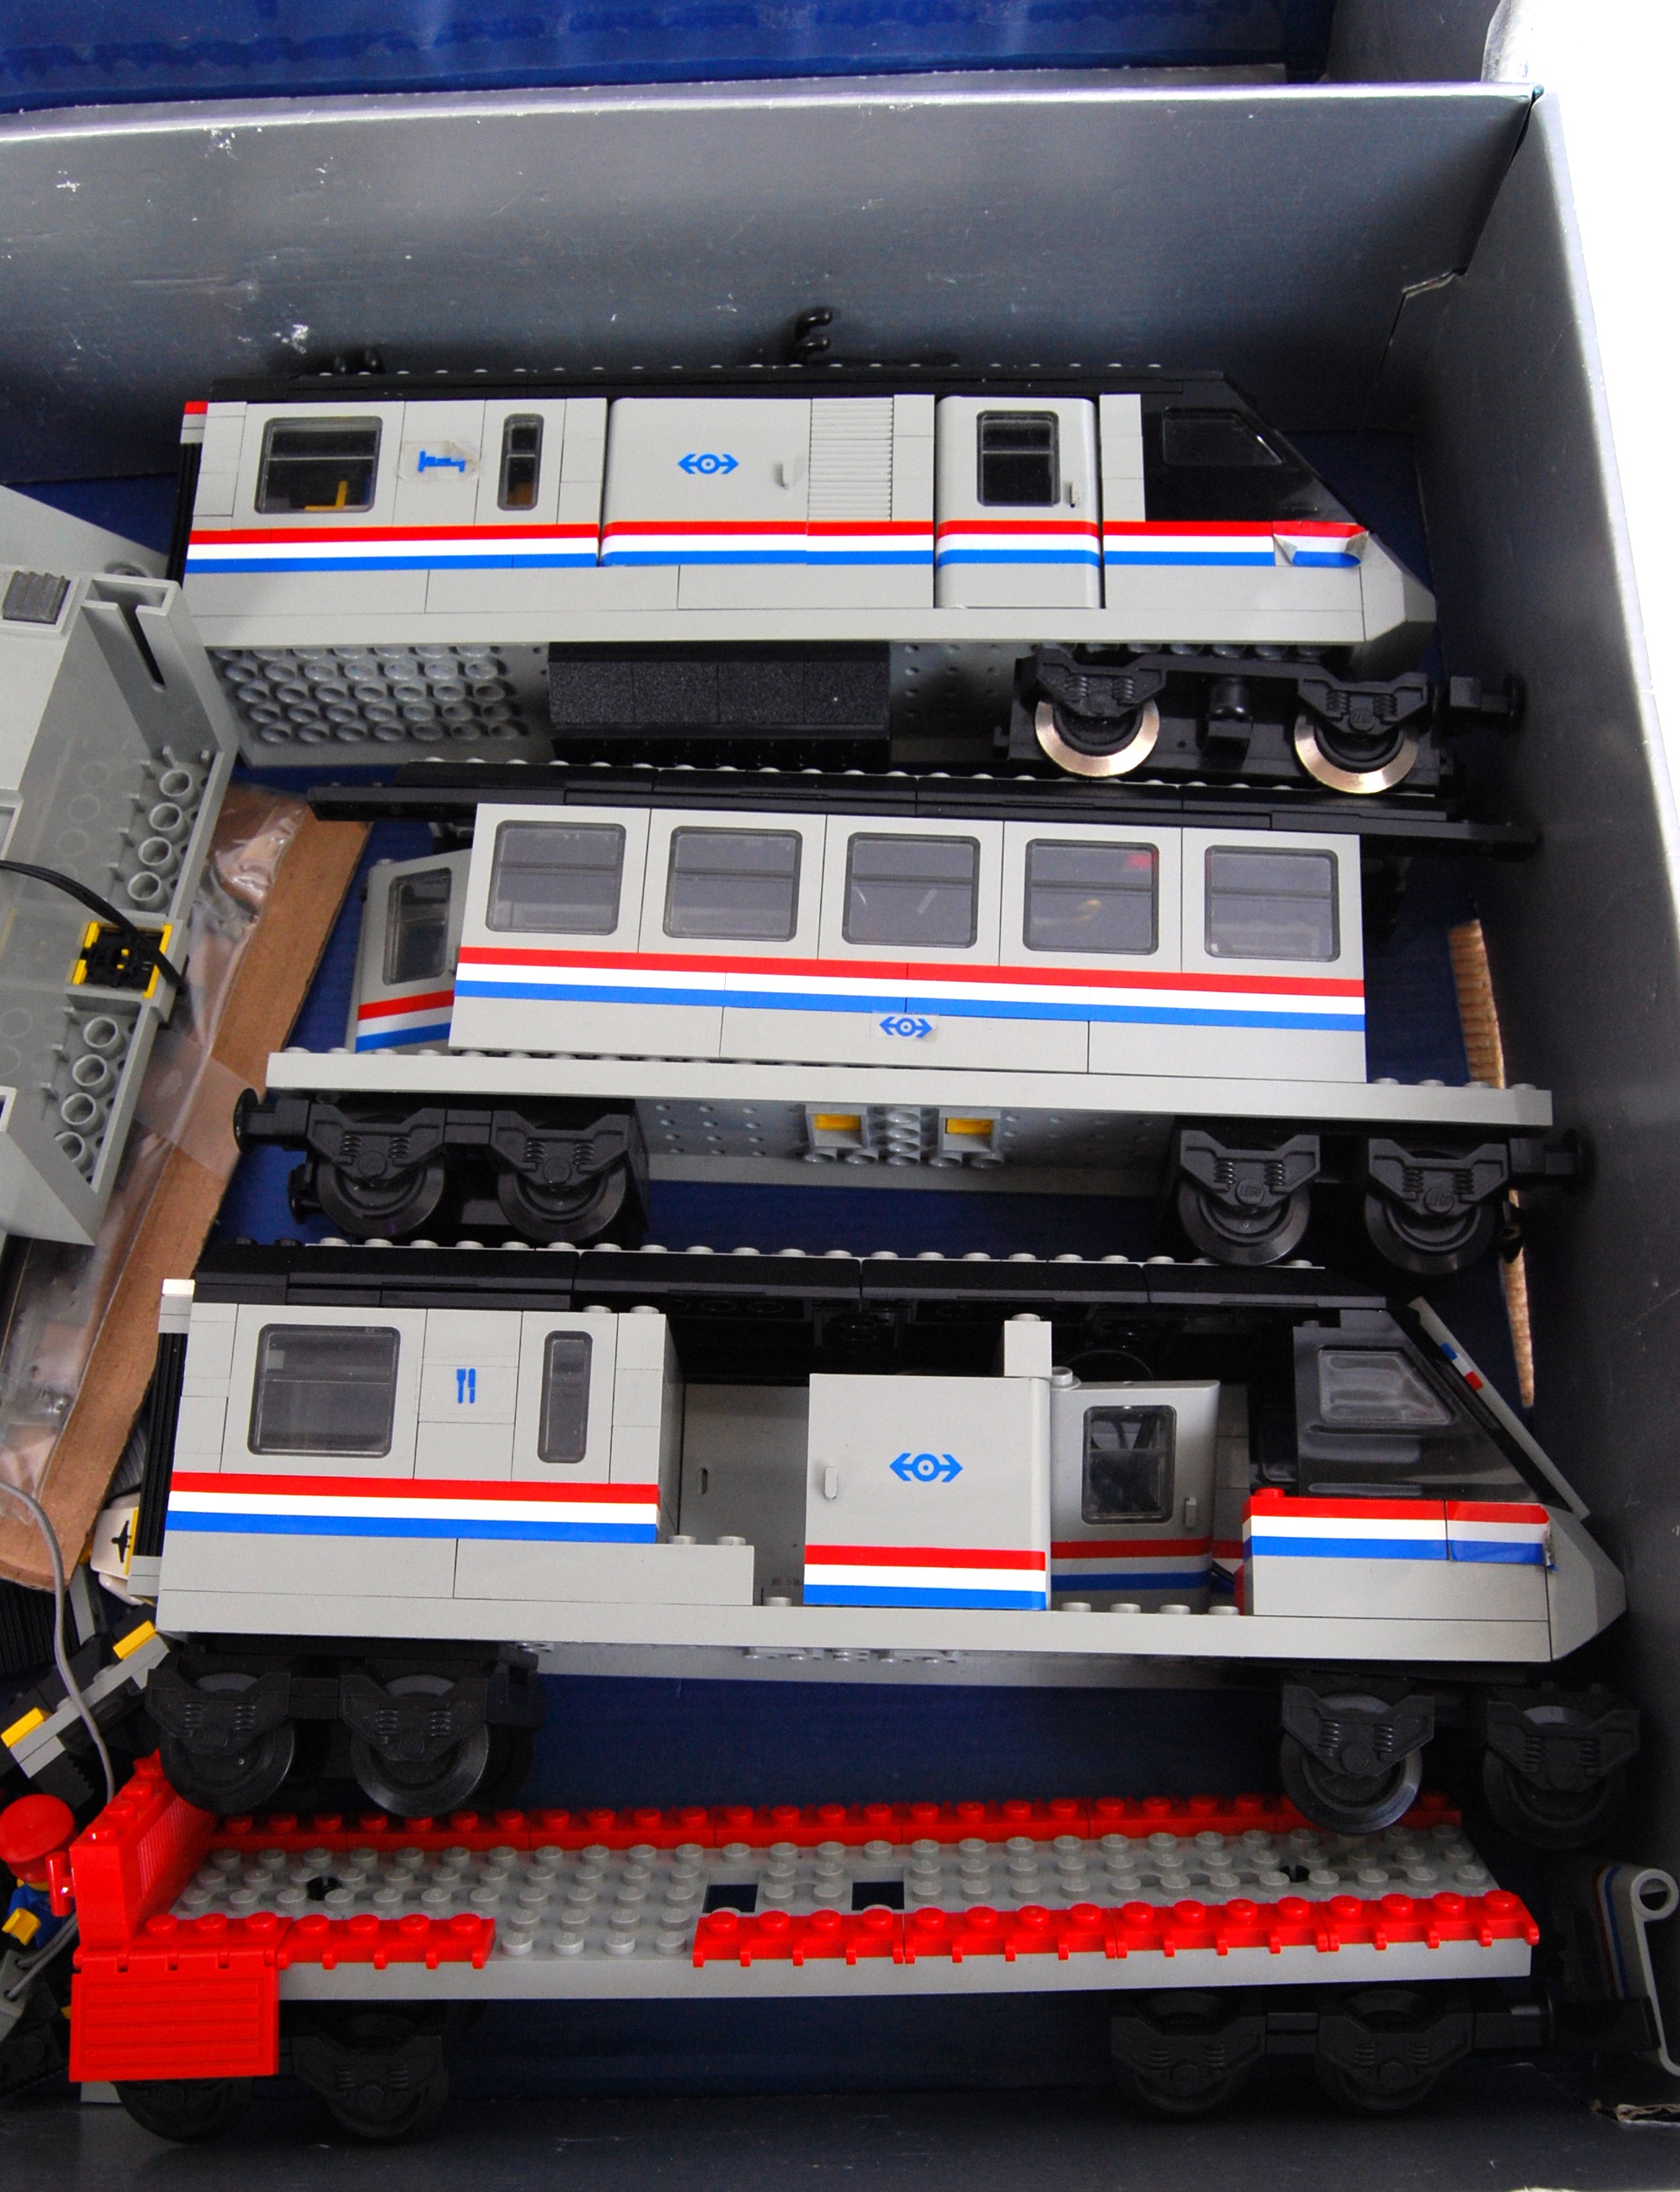 LEGO METROLINER; An original vintage Lego Metroliner 9v electric train set. - Image 4 of 5